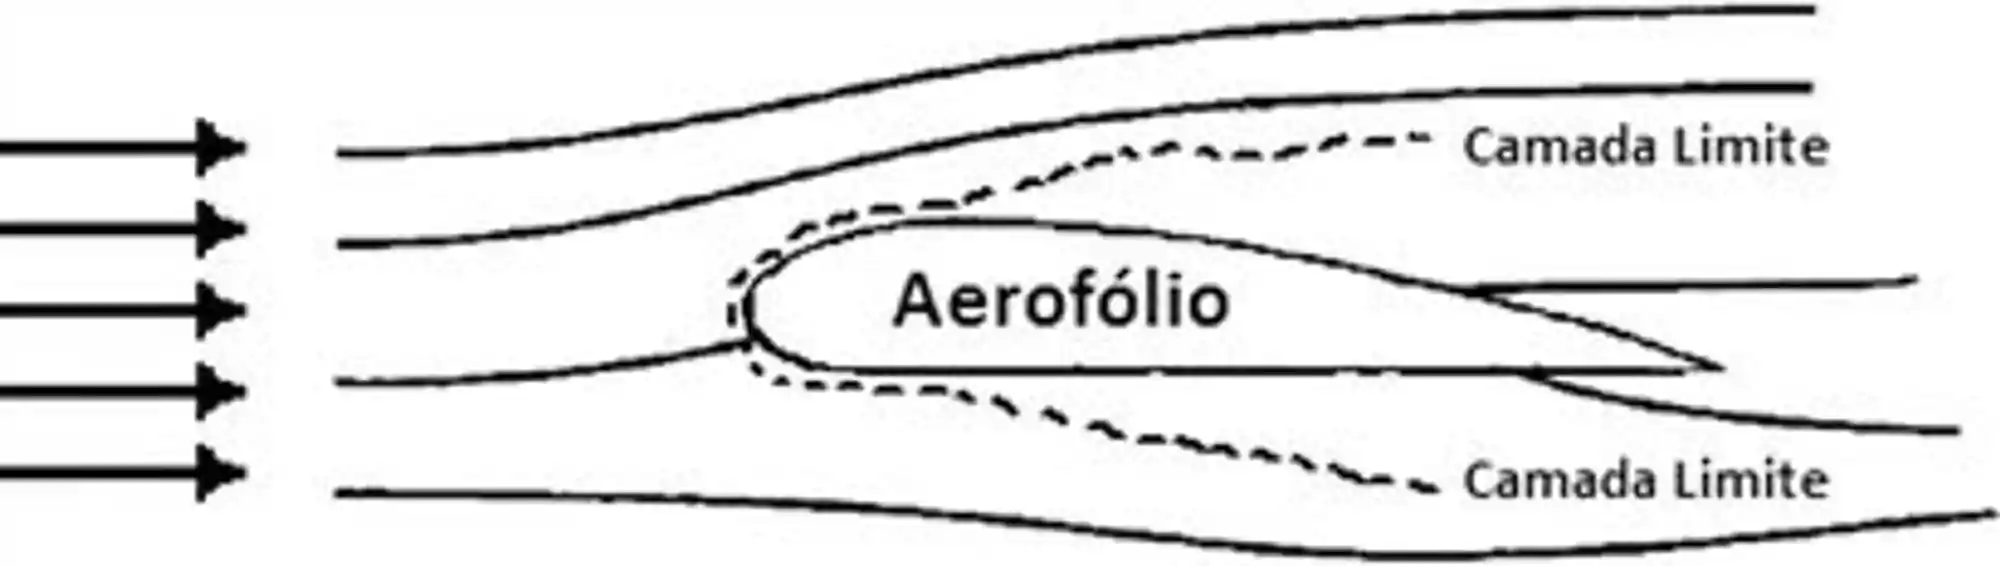 O escoamento do ar em torno de um aerofólio gera uma camada limite.